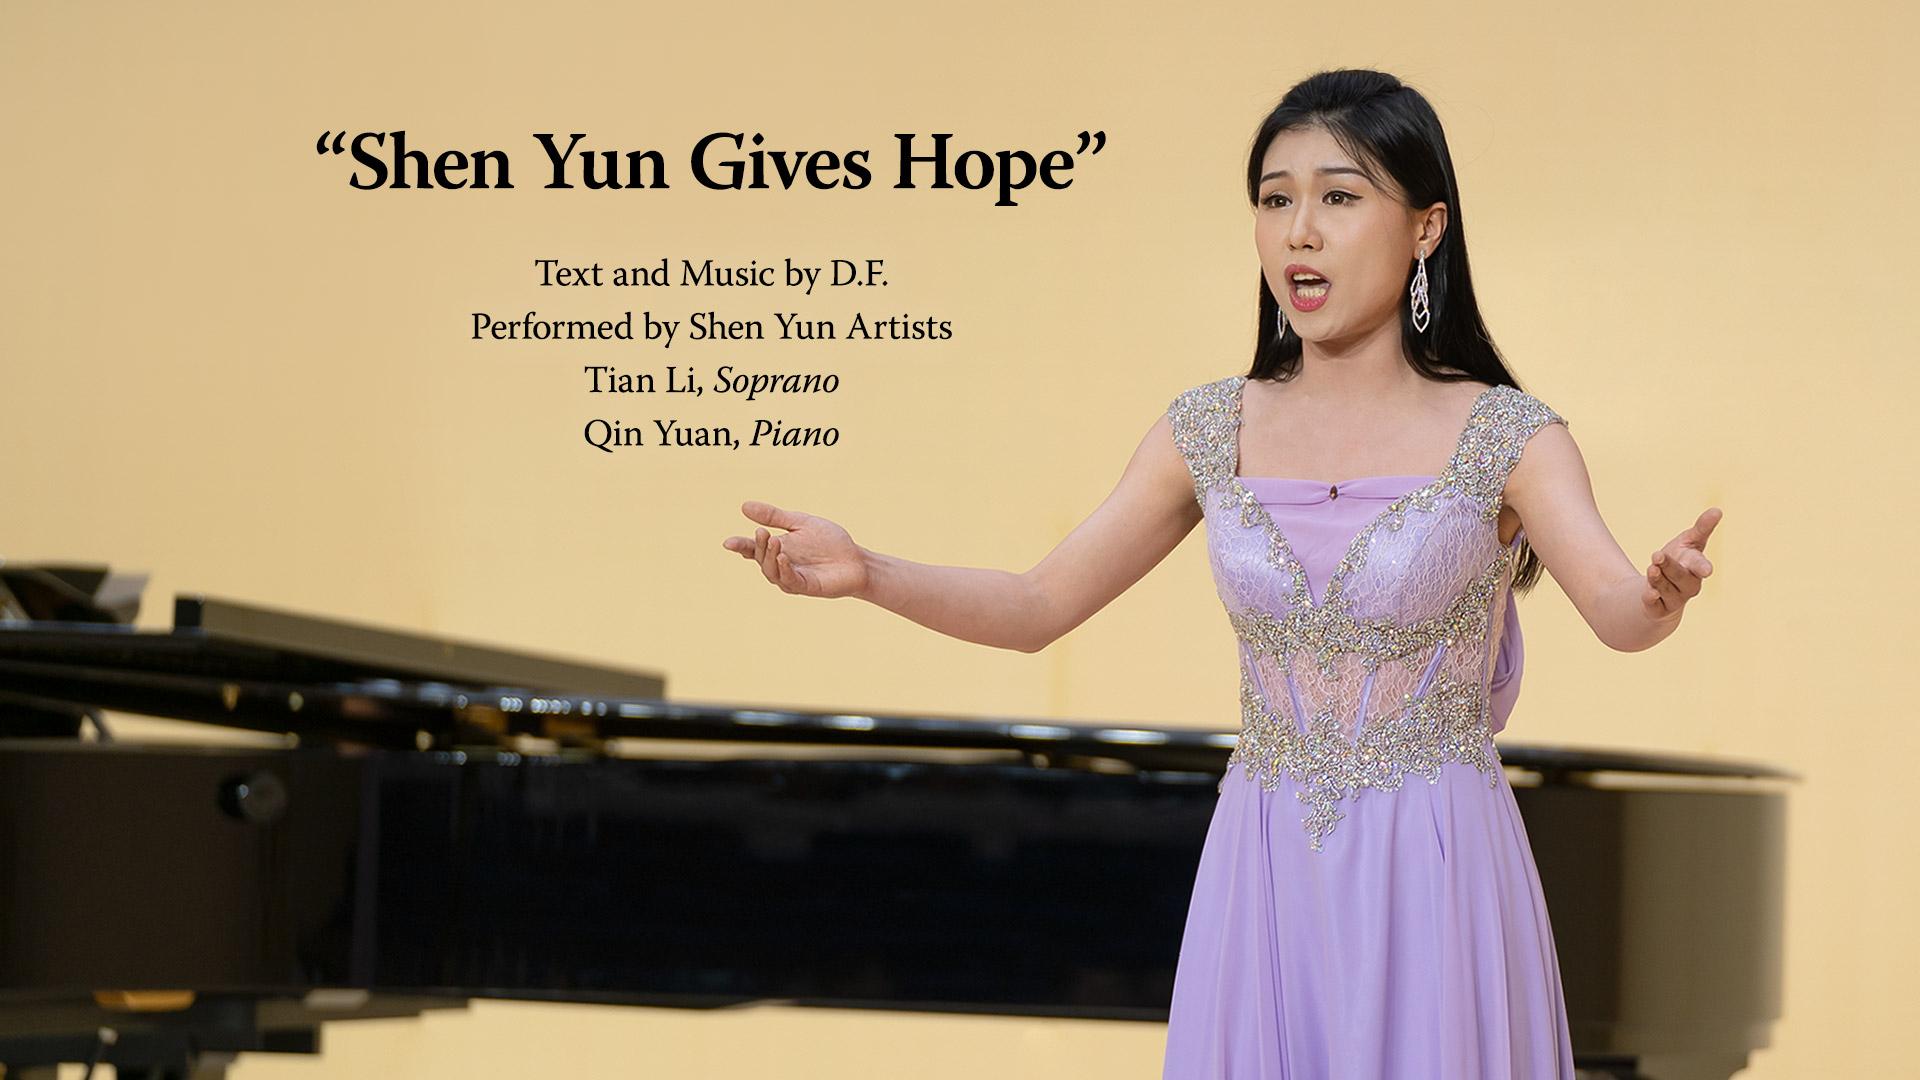 Shen Yun Gives Hope